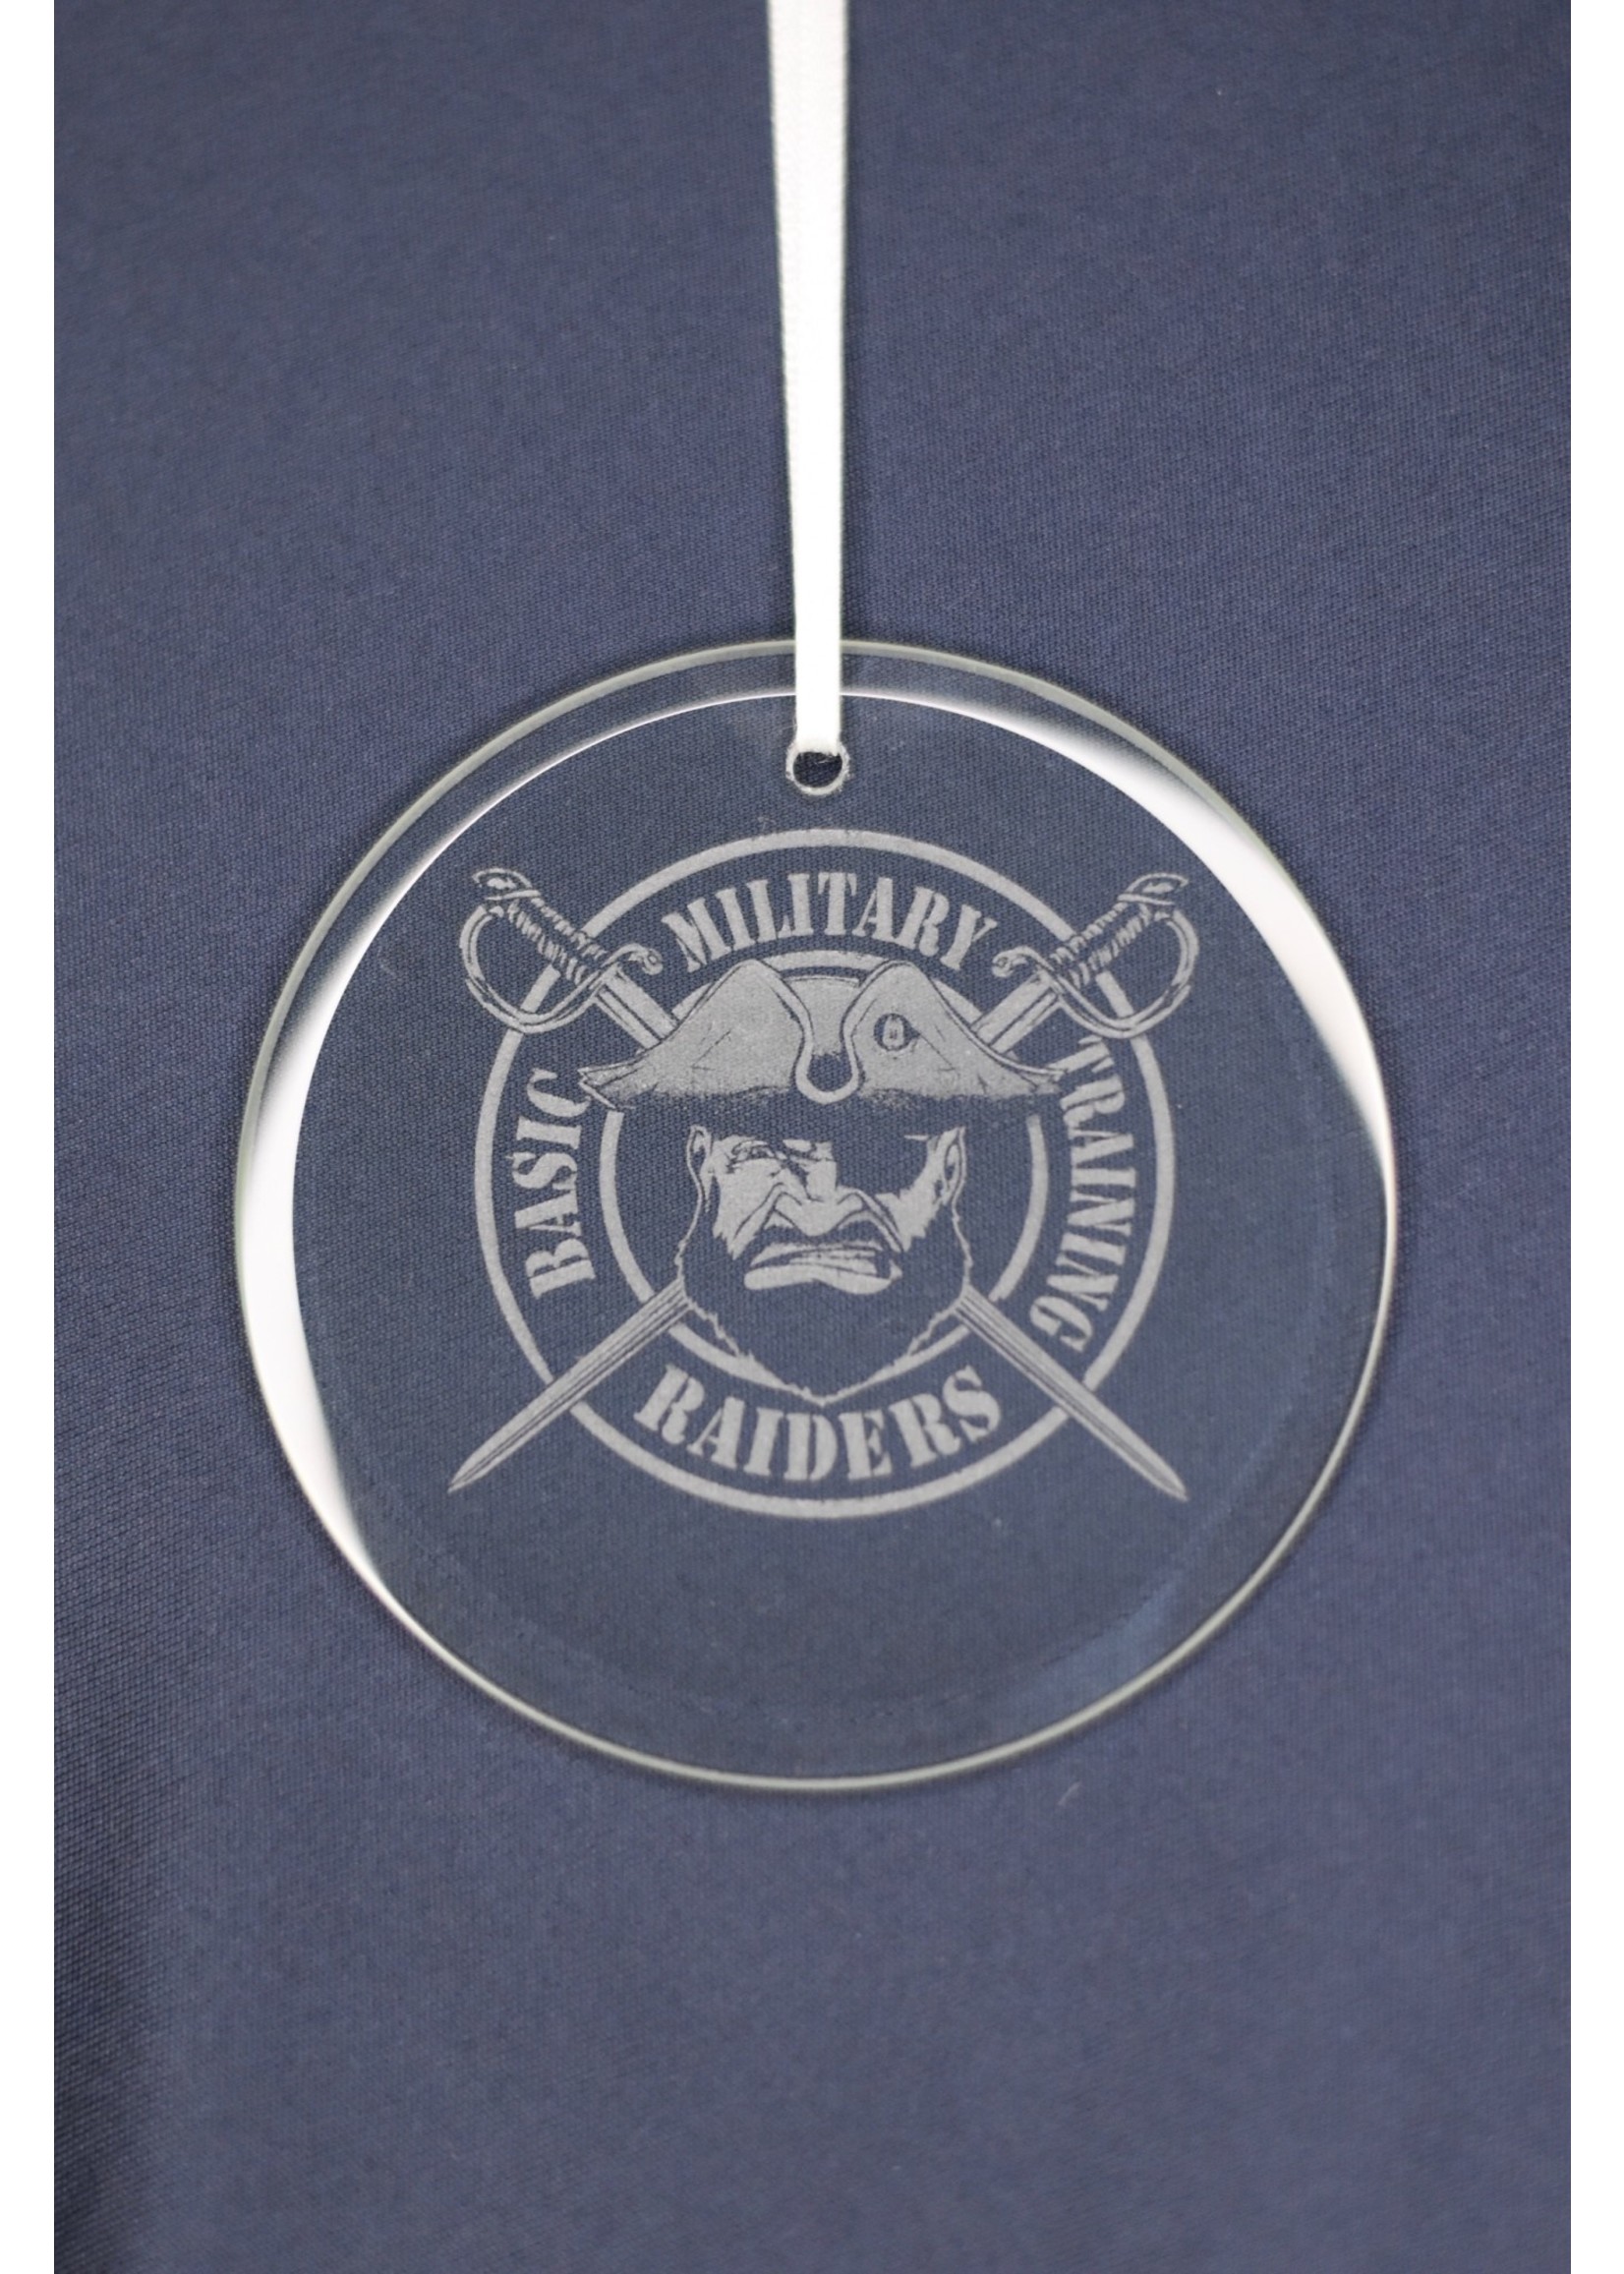 433rd Squadron Glass Ornament